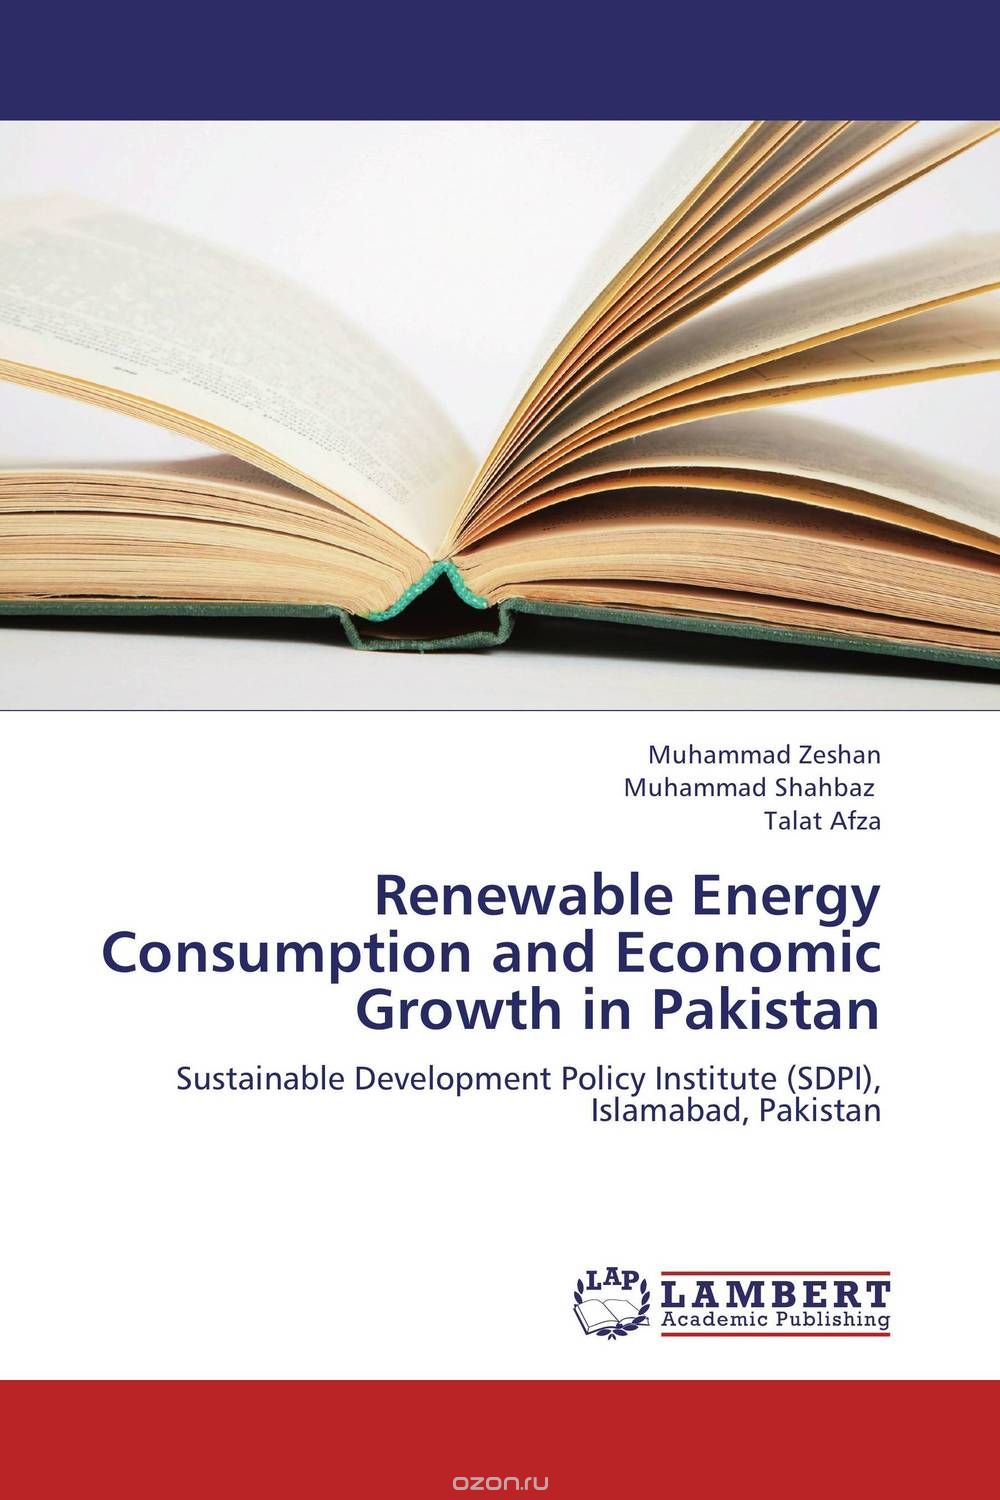 Скачать книгу "Renewable Energy Consumption and Economic Growth in Pakistan"